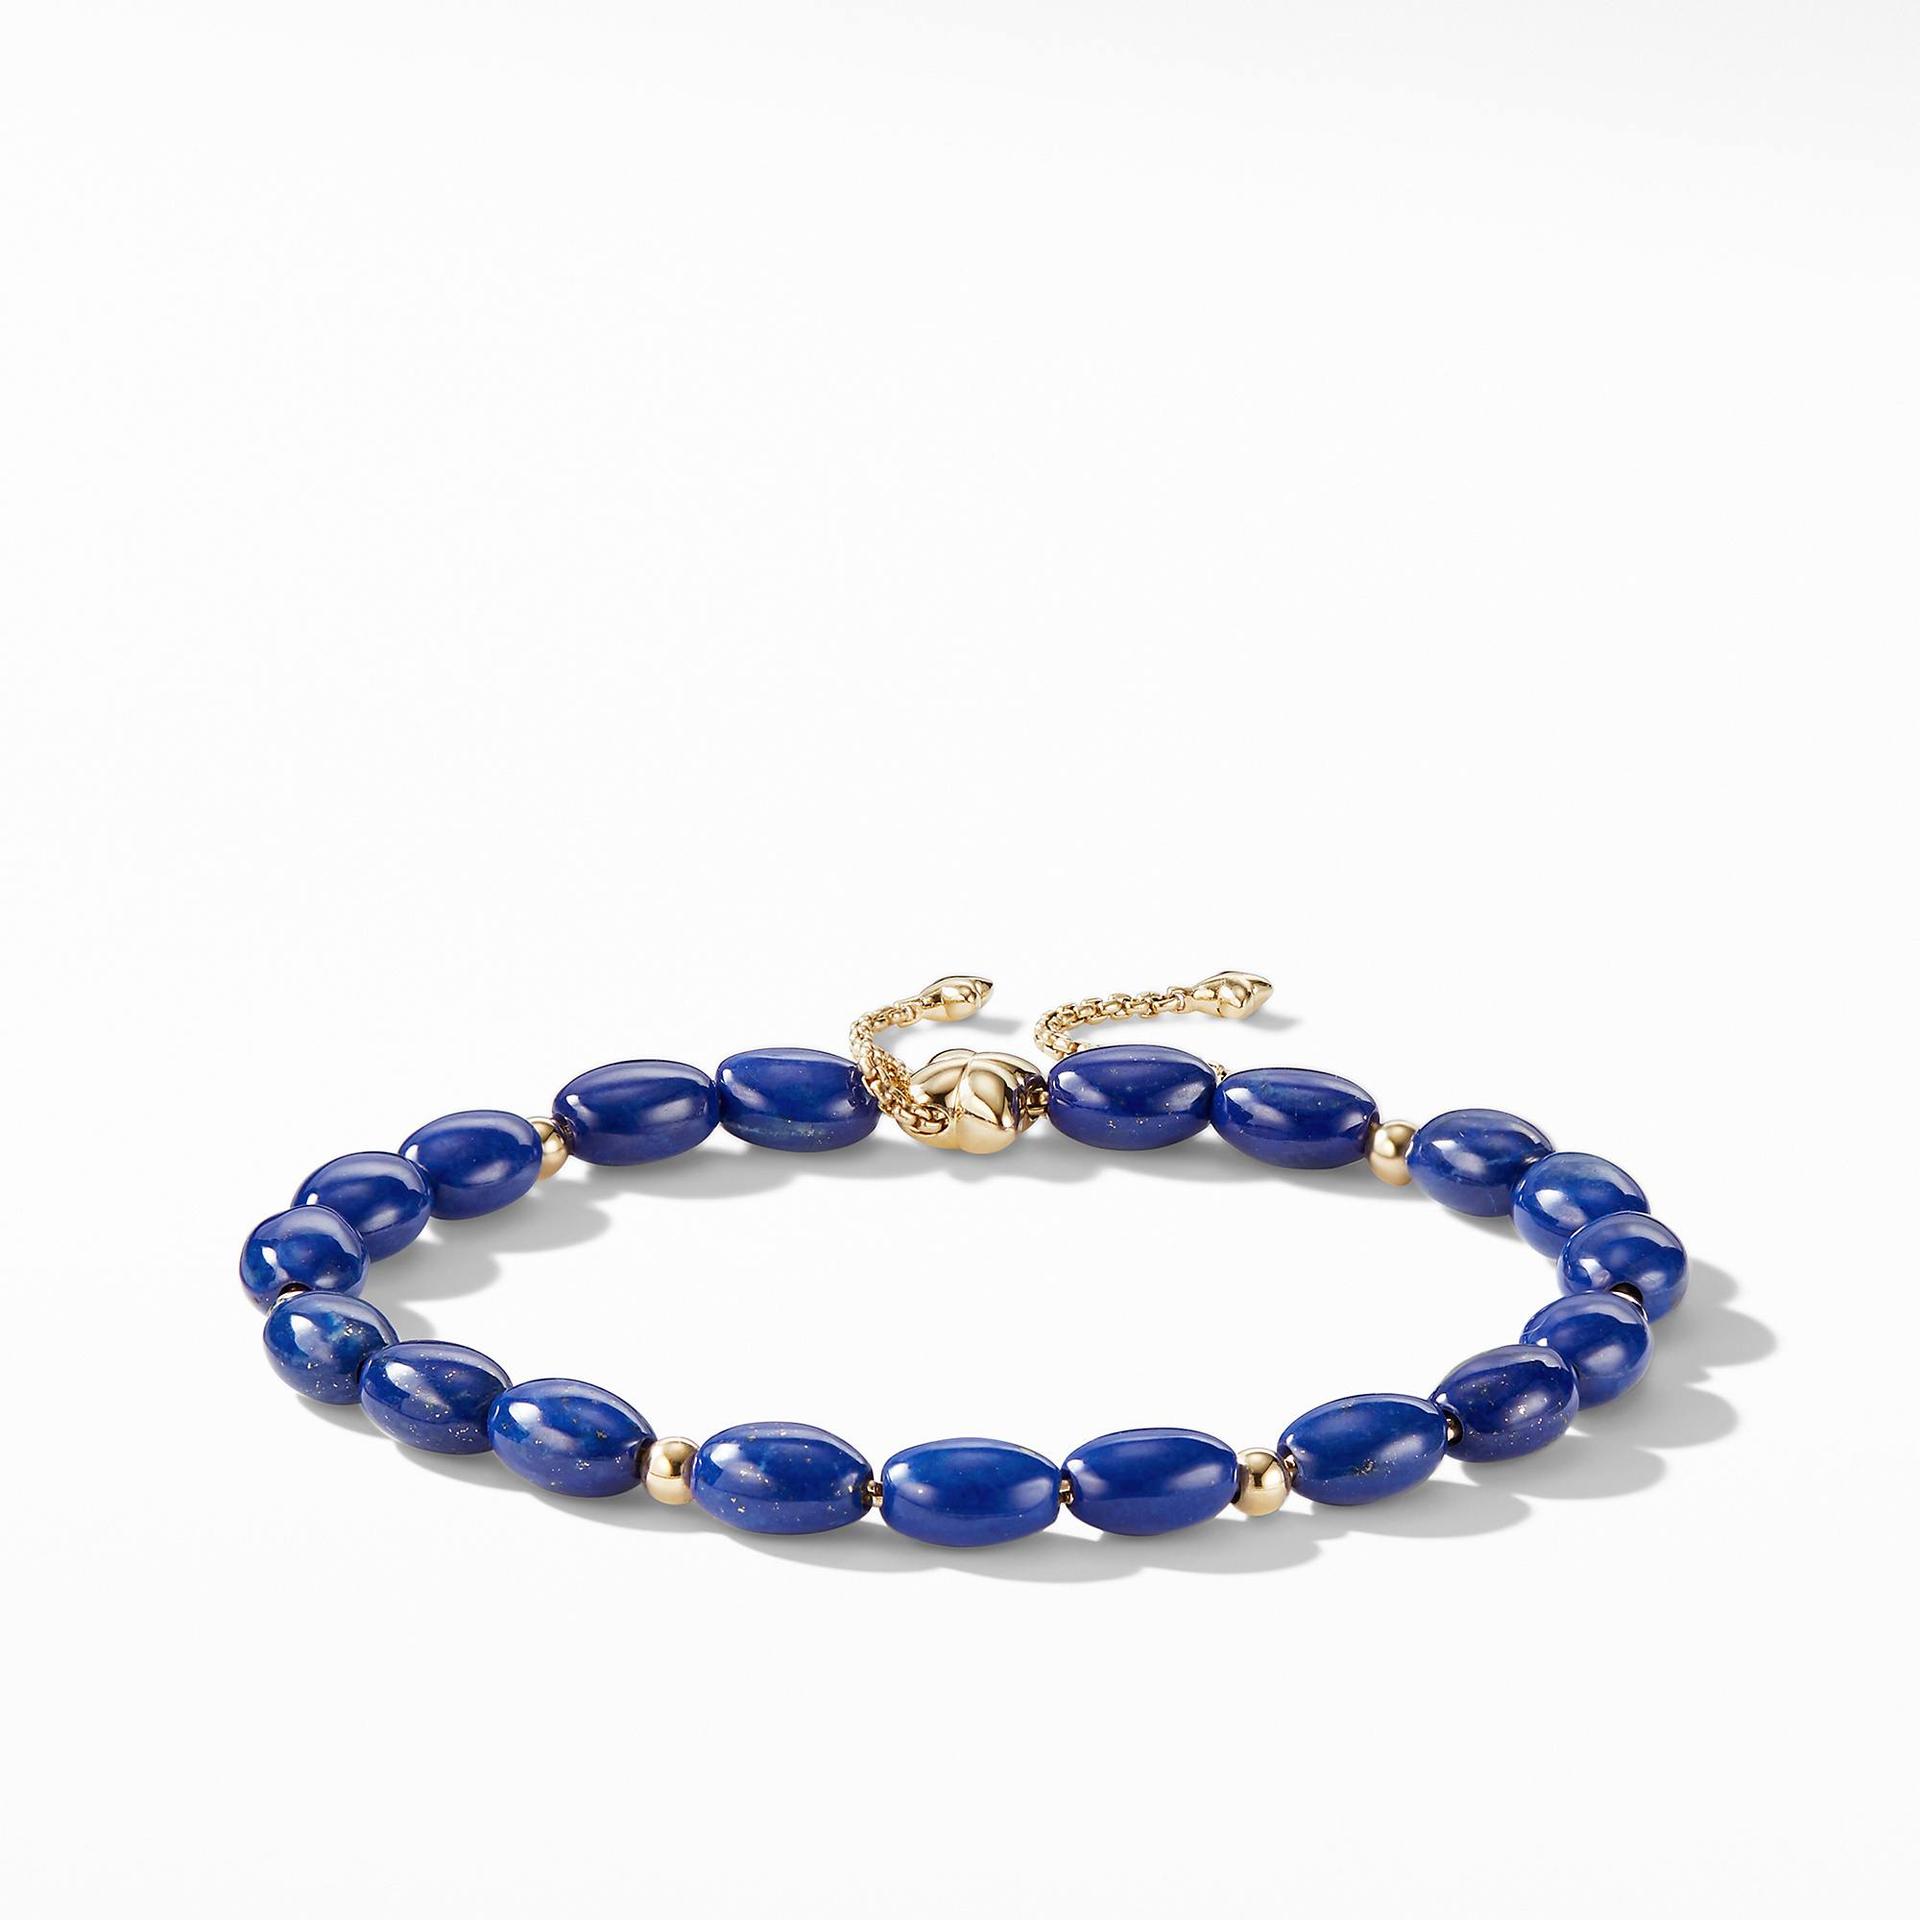 David Yurman Spiritual Bead Bracelet with Lapis Lazuli and 18K Gold 0